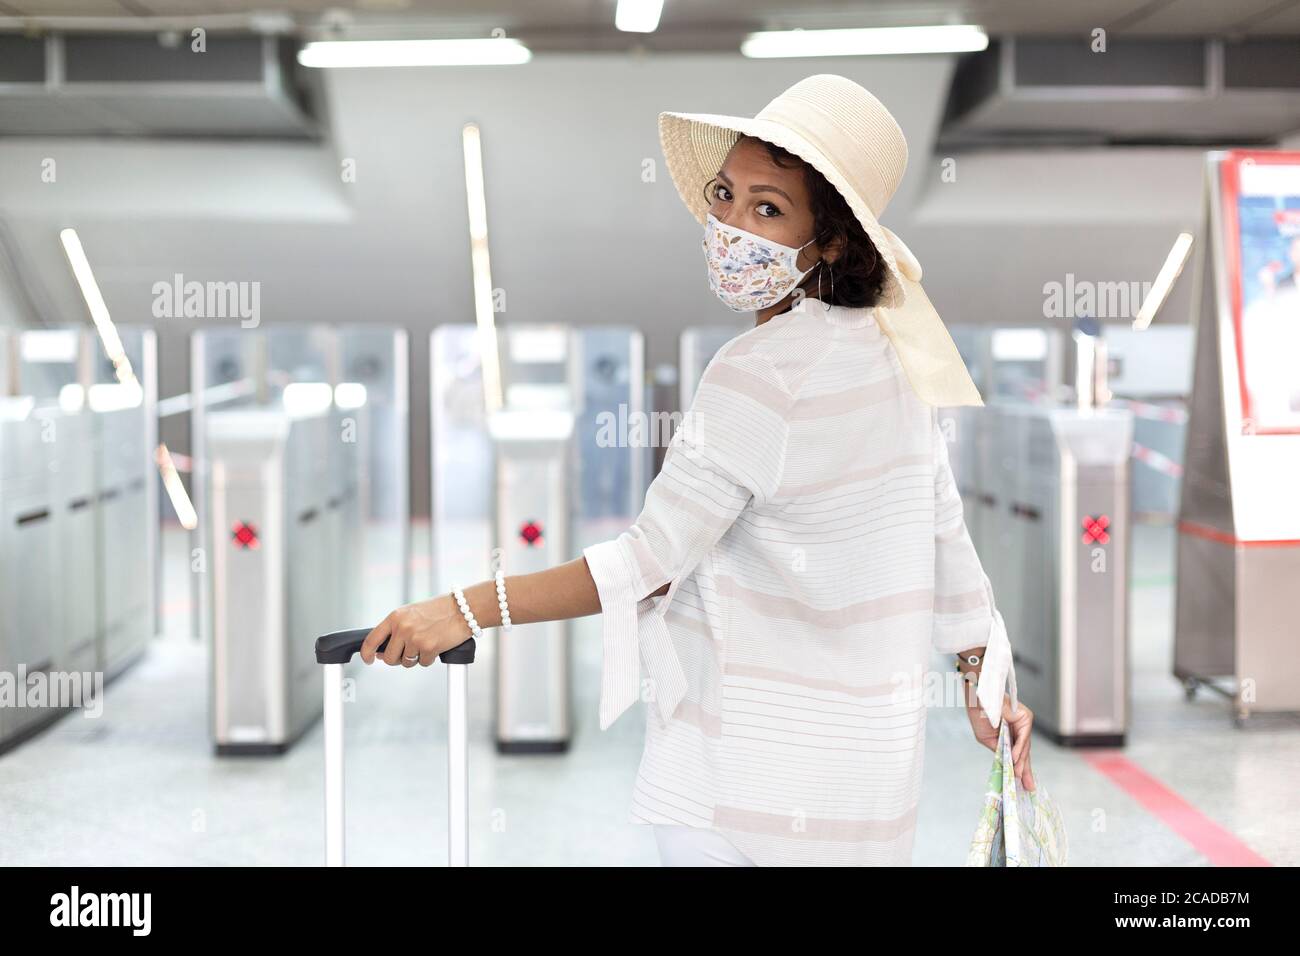 Eine lateinische Frau mit Koffer, einer Touristenkarte und einer Gesichtsmaske, die bereit ist, während eines Coronavirus-Ausbruchs auf eine Reise zu gehen. Sicheres Reisekonzept. Stockfoto